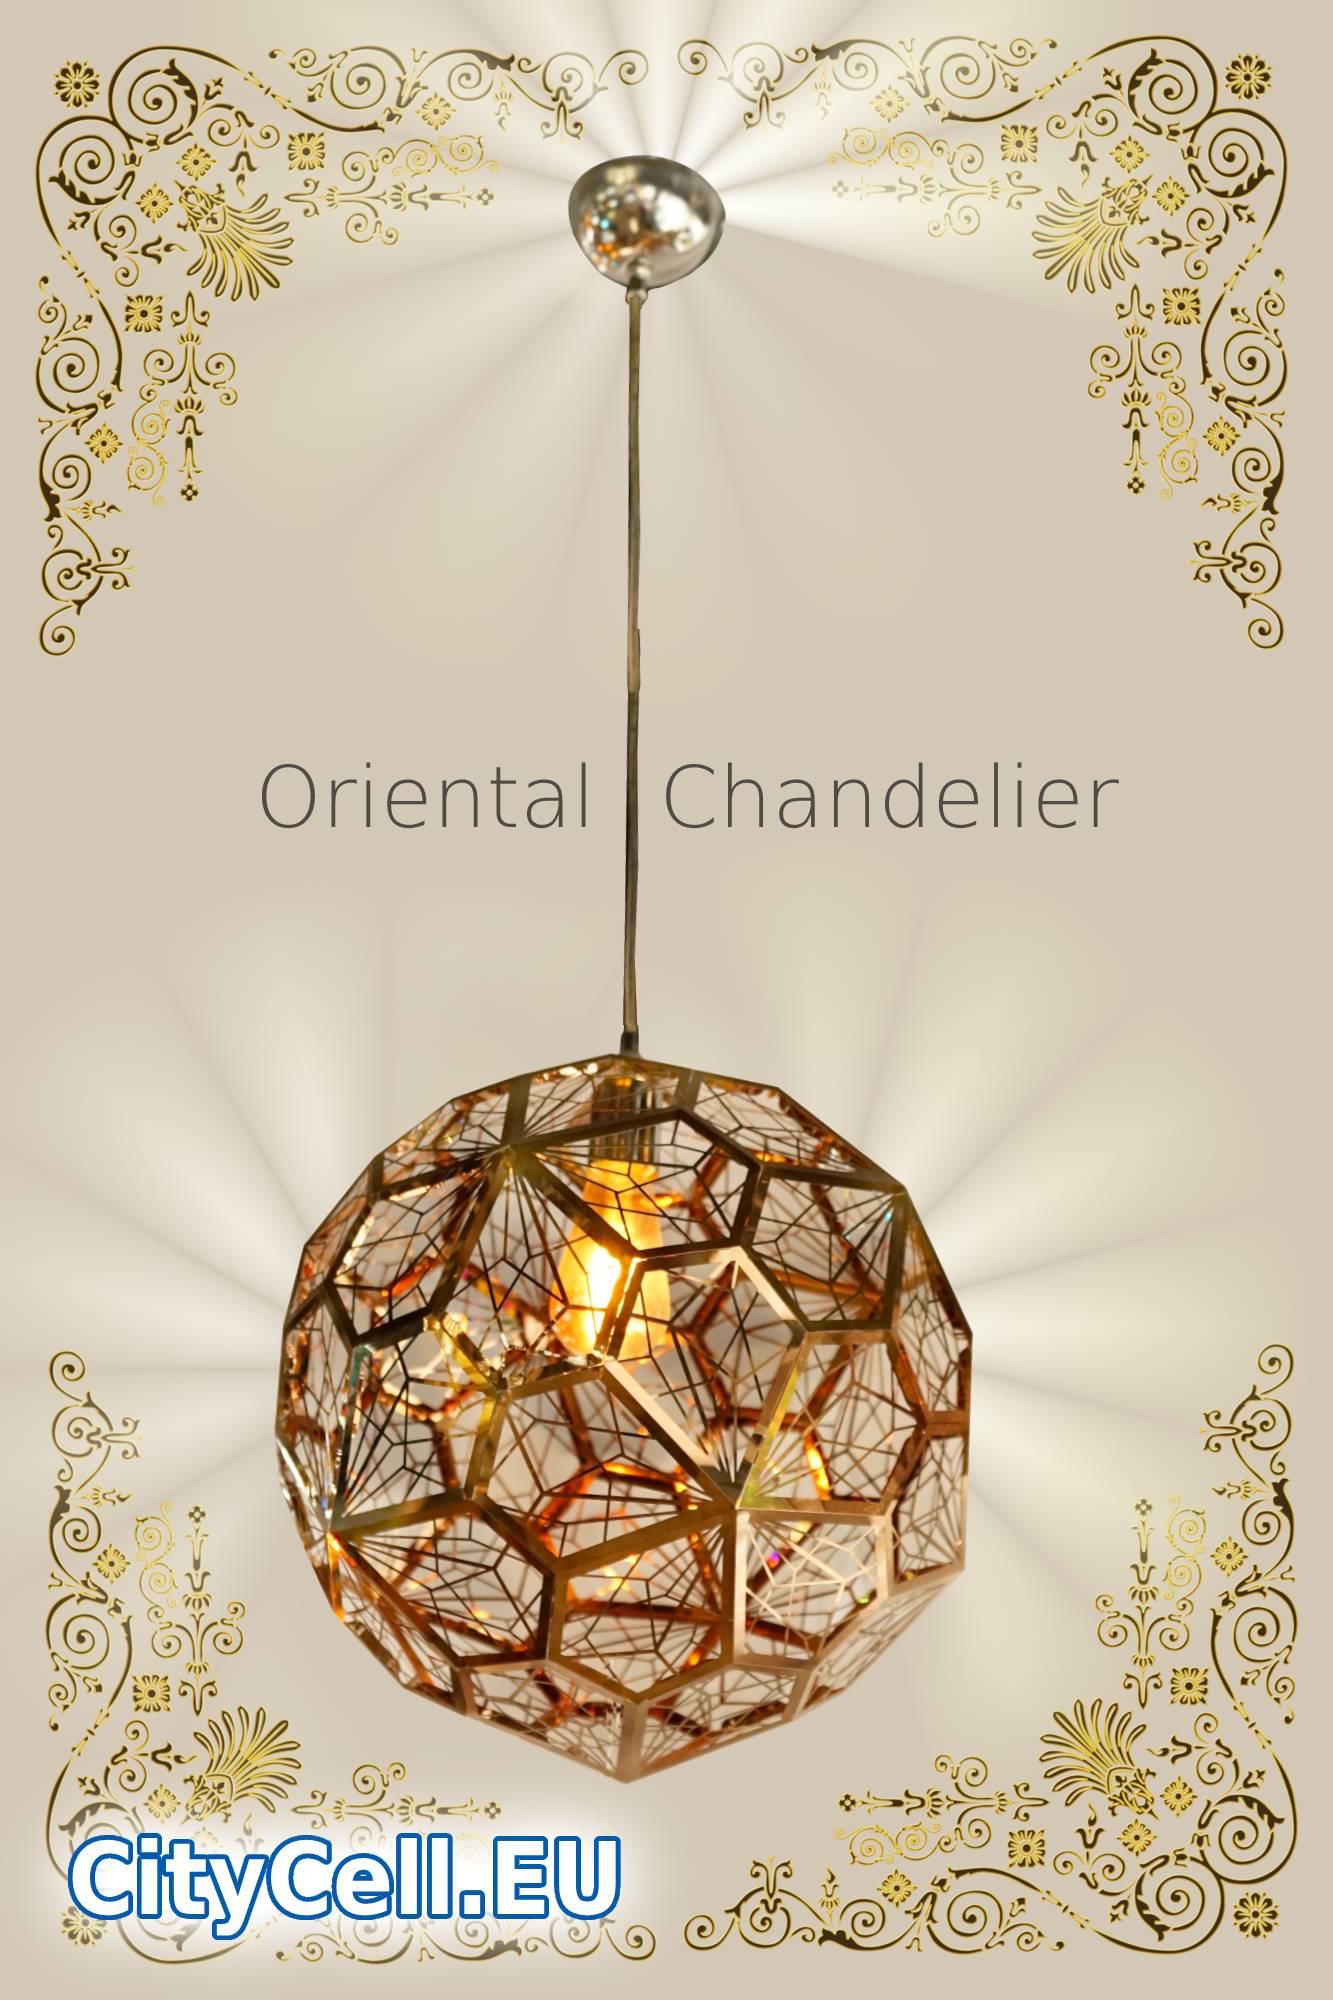 Oriental Chandelier LF112 Cyprus Limassol CityCell Order Online